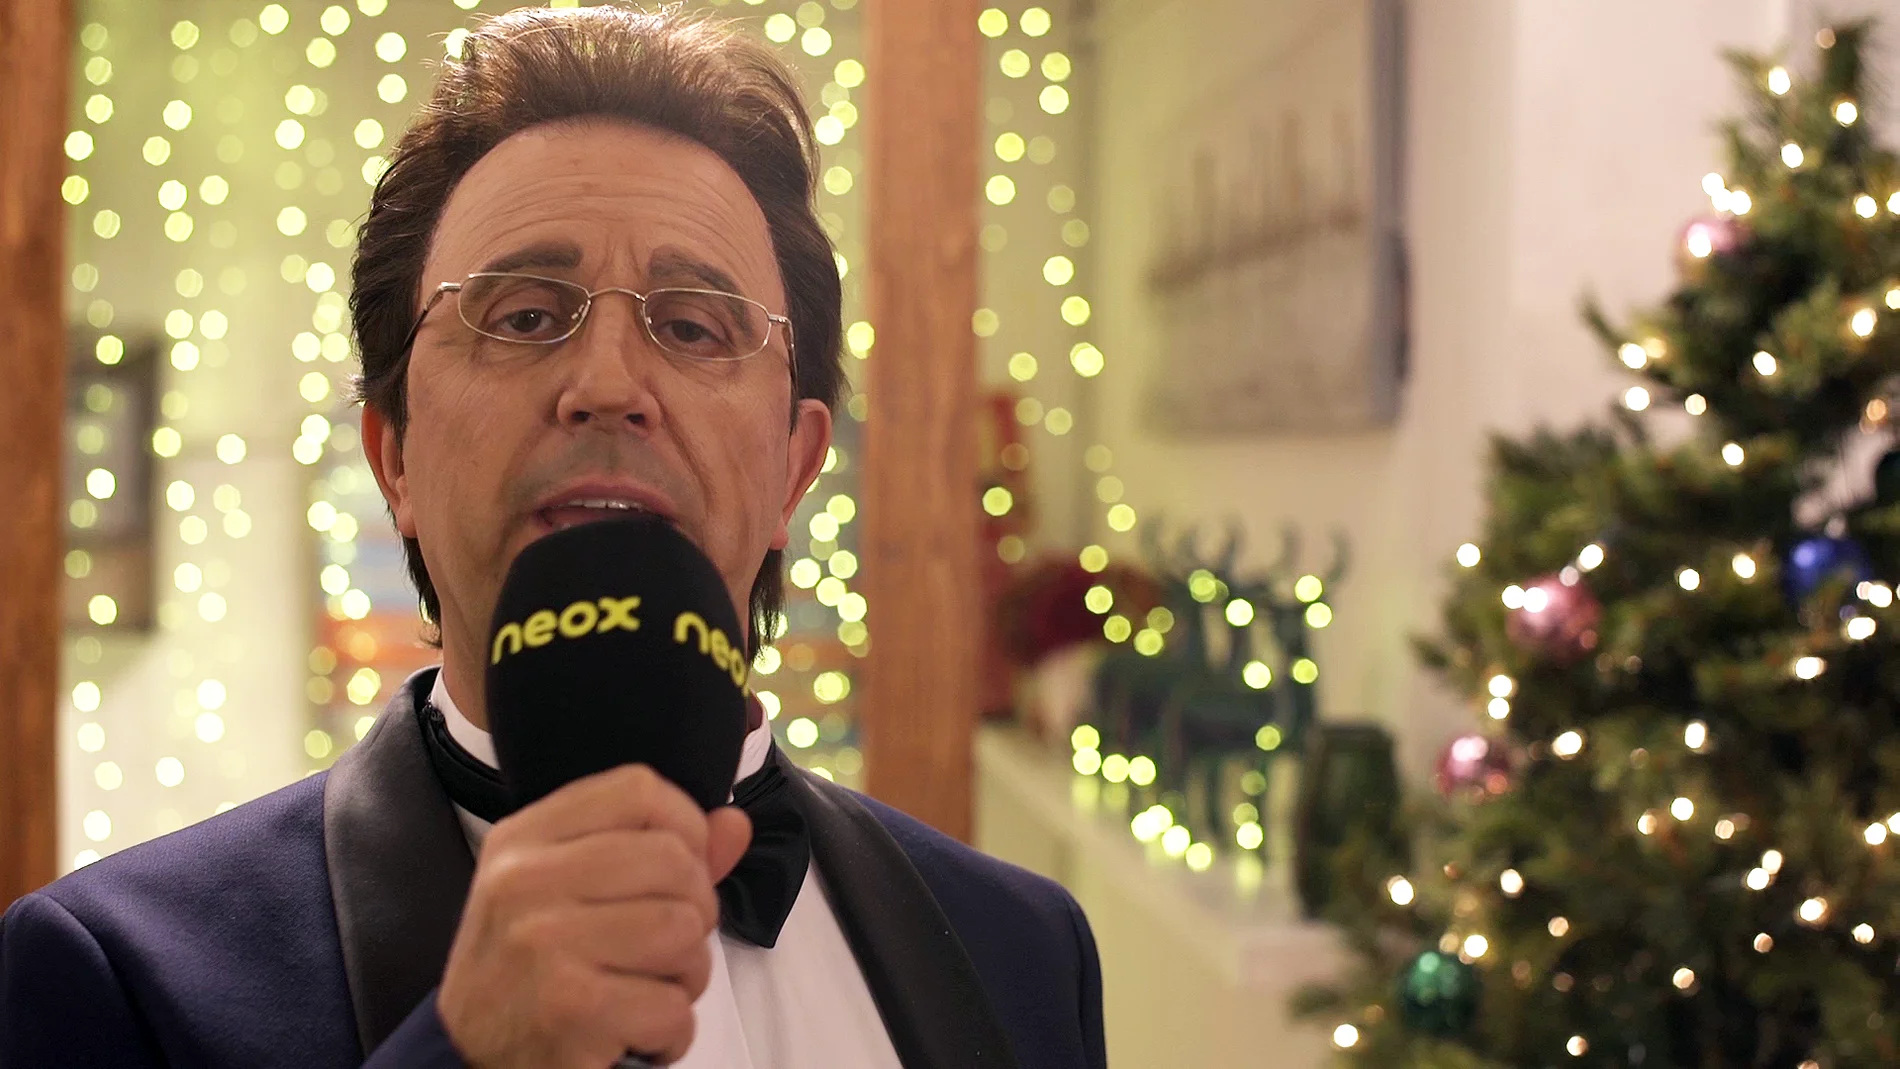 Matías Prats en 'Feliz Año Neox': "En 2019 me gustaría cantar el gordo"